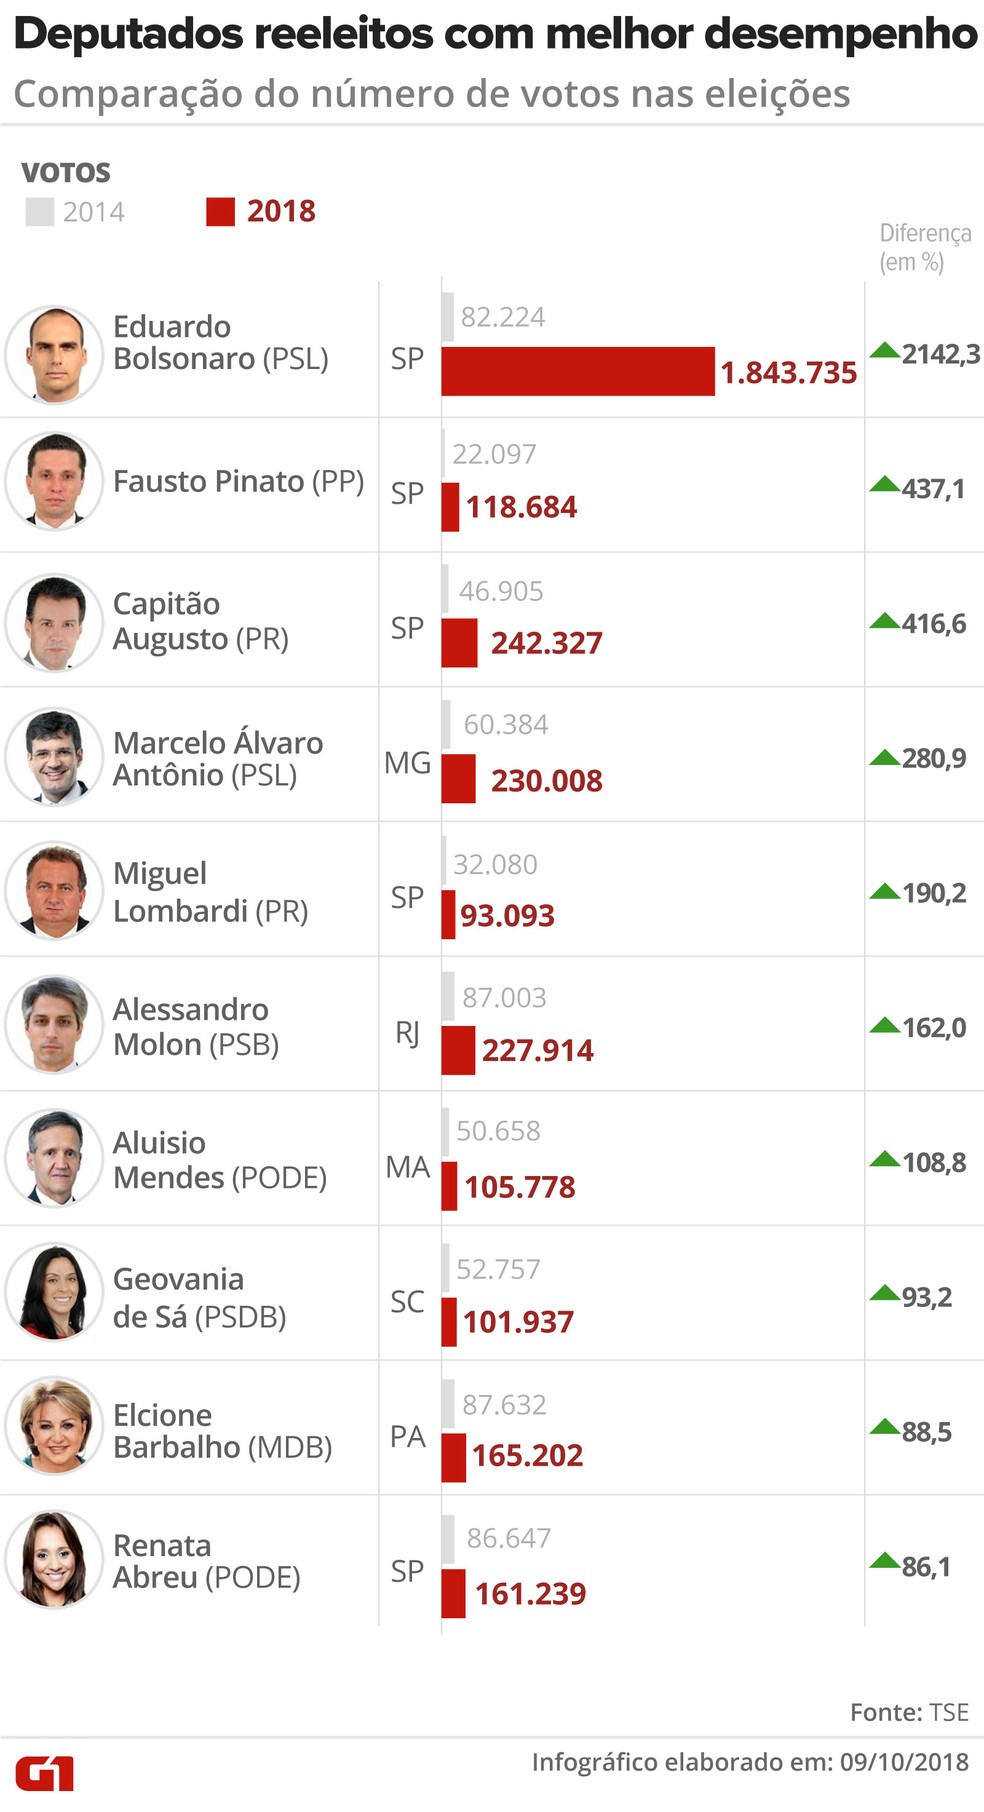 Deputados reeleitos com melhor desempenho: comparação do número de votos nas eleições de 2014 e 2018 — Foto: Igor Estrella / G1